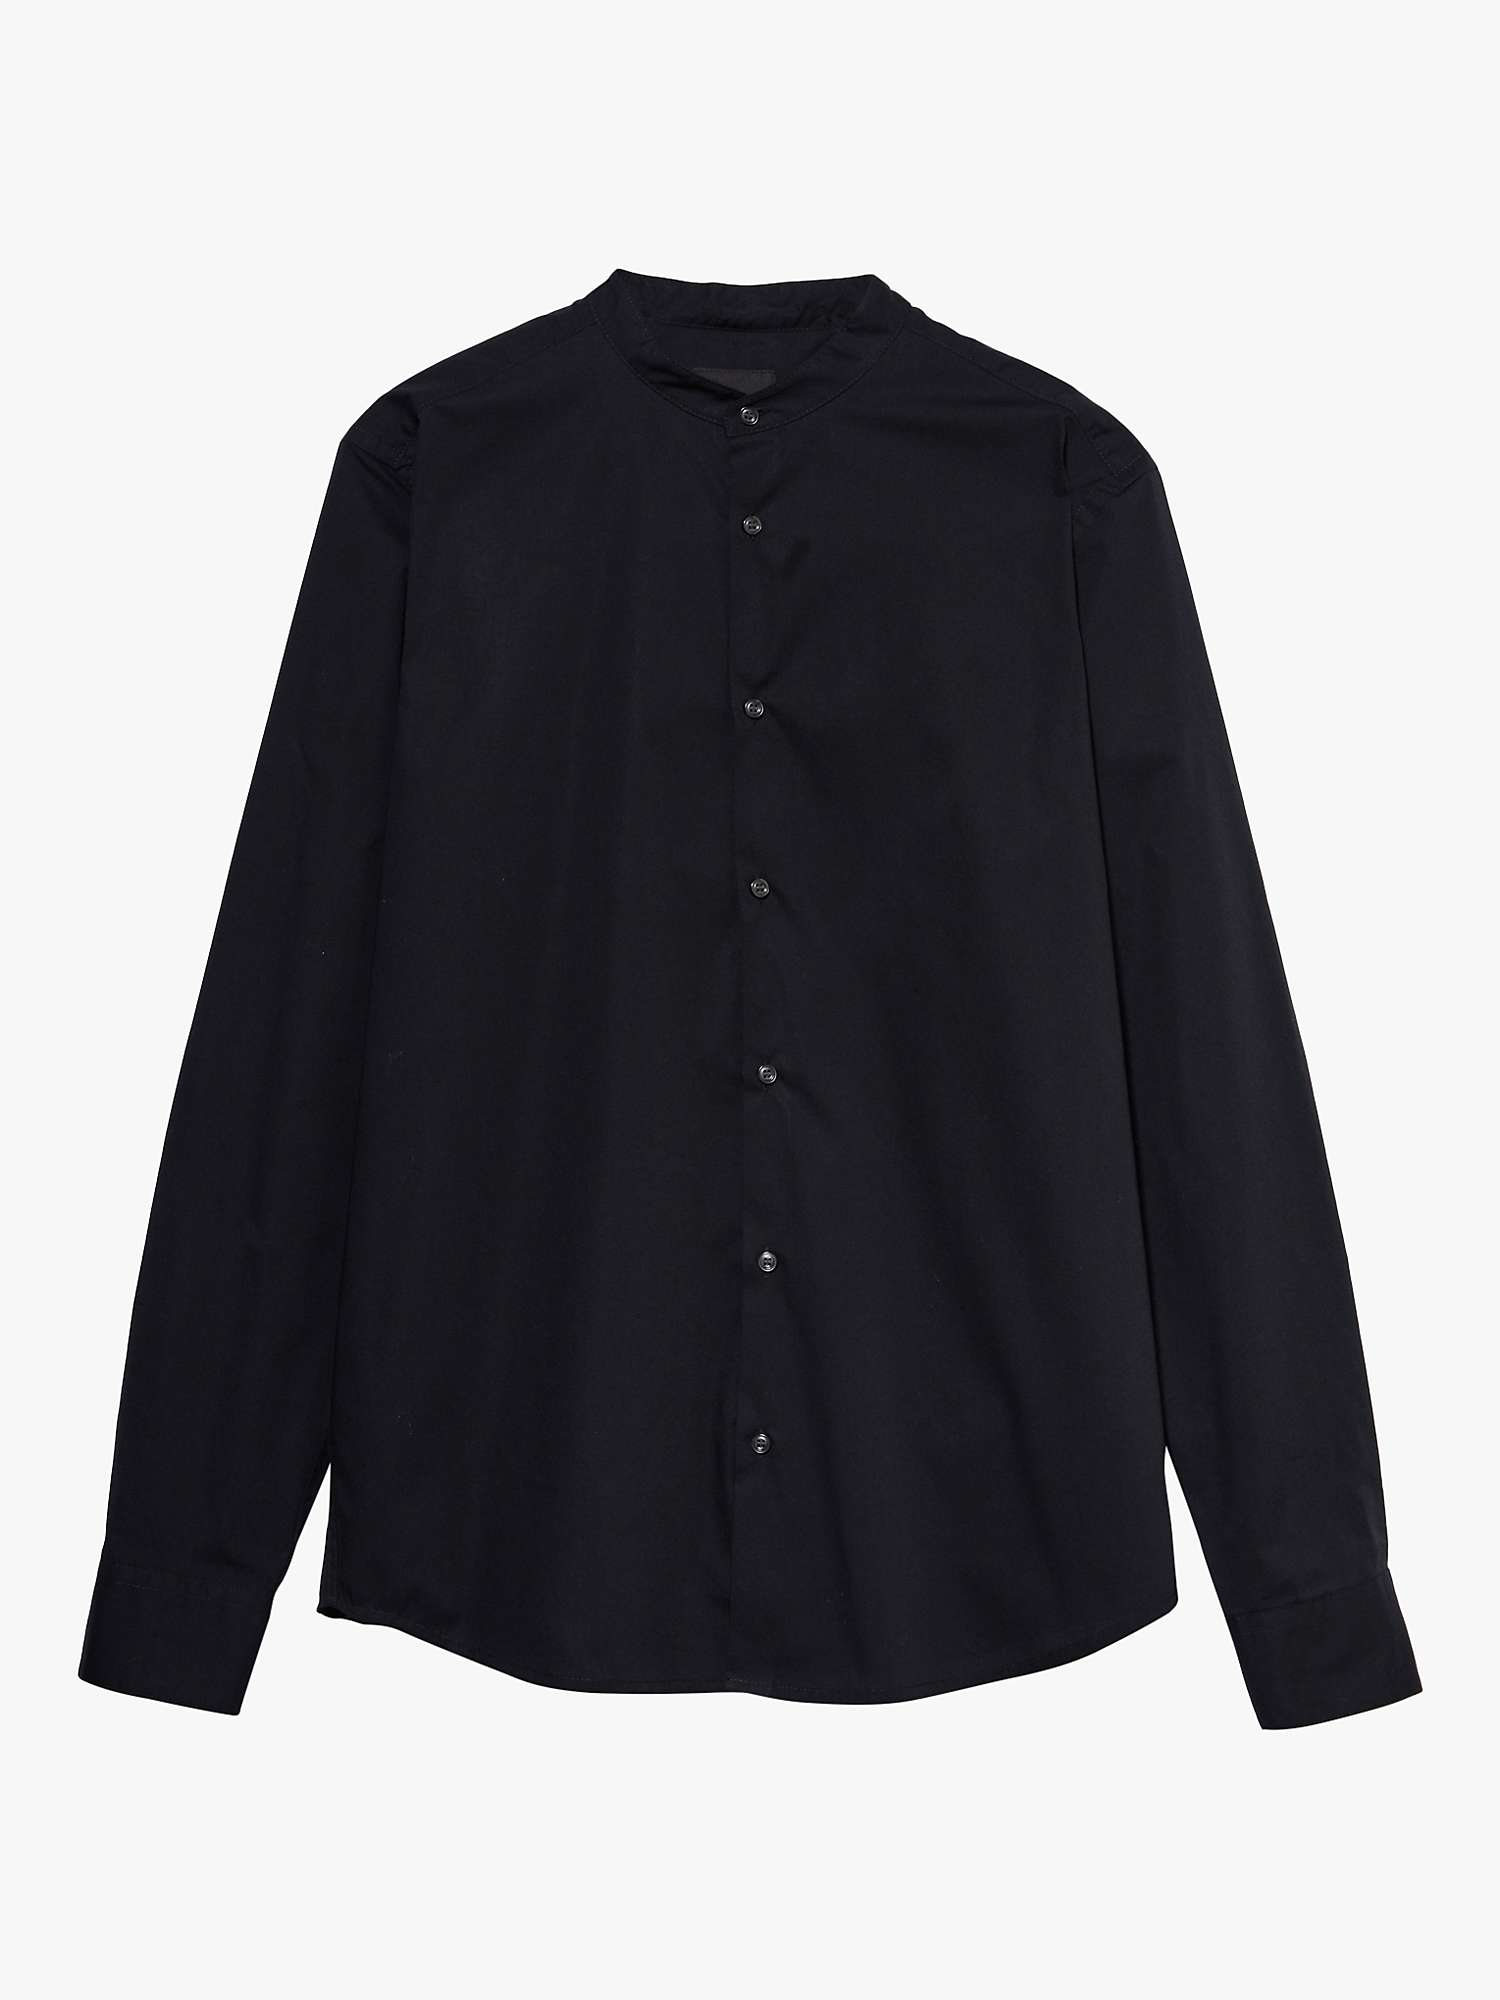 Buy SISLEY Mandarin Collar Slim Fit Shirt Online at johnlewis.com